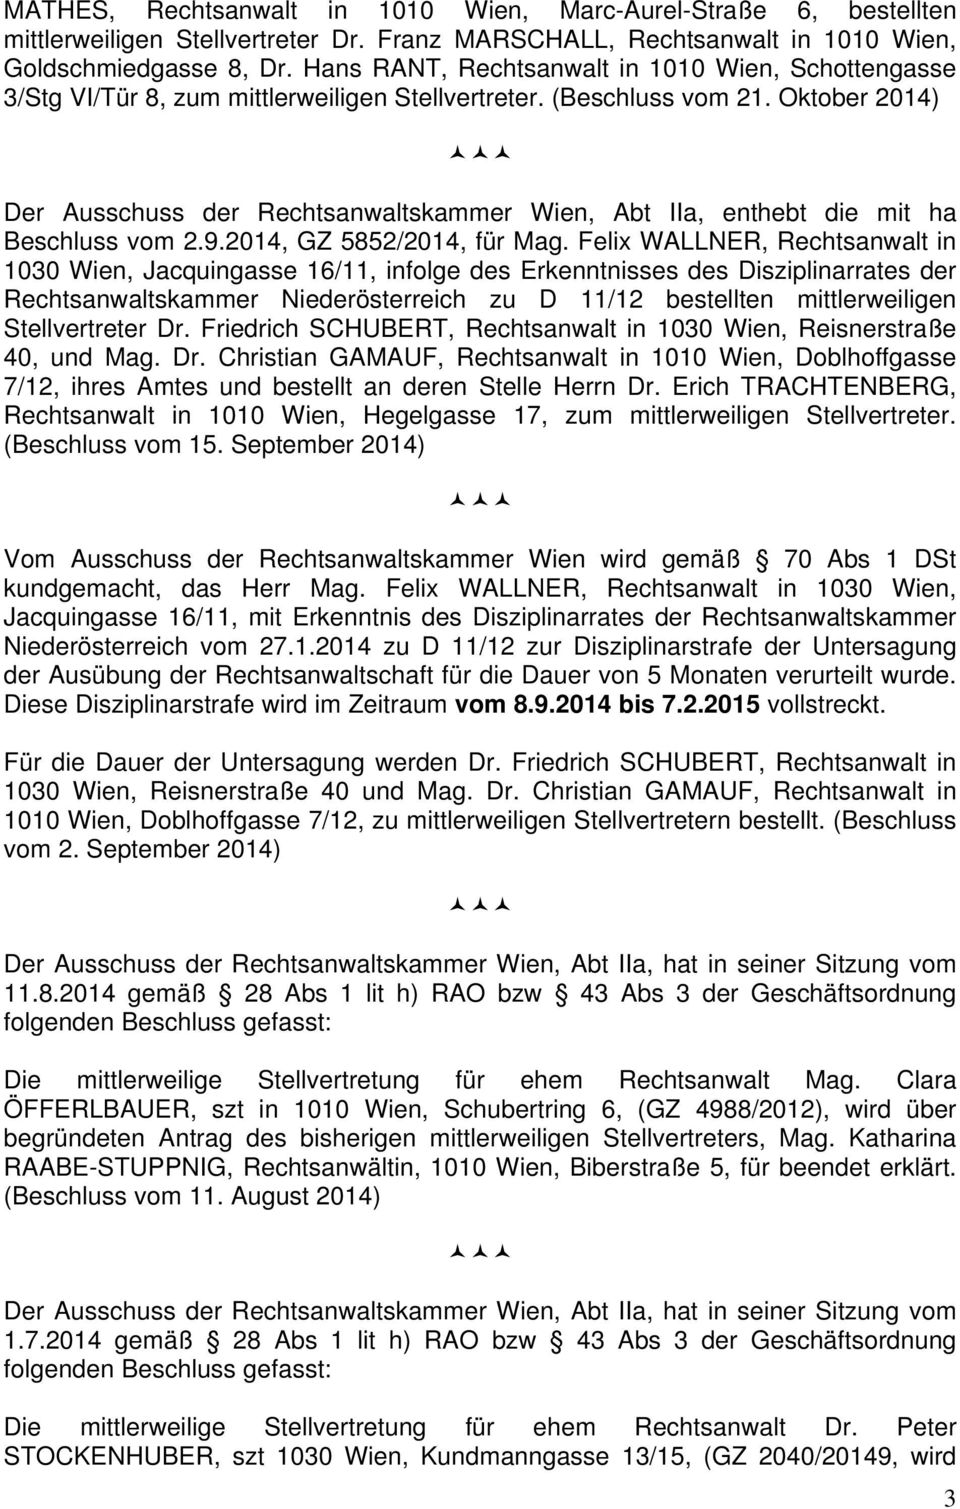 Oktober 2014) Der Ausschuss der Rechtsanwaltskammer Wien, Abt IIa, enthebt die mit ha Beschluss vom 2.9.2014, GZ 5852/2014, für Mag.